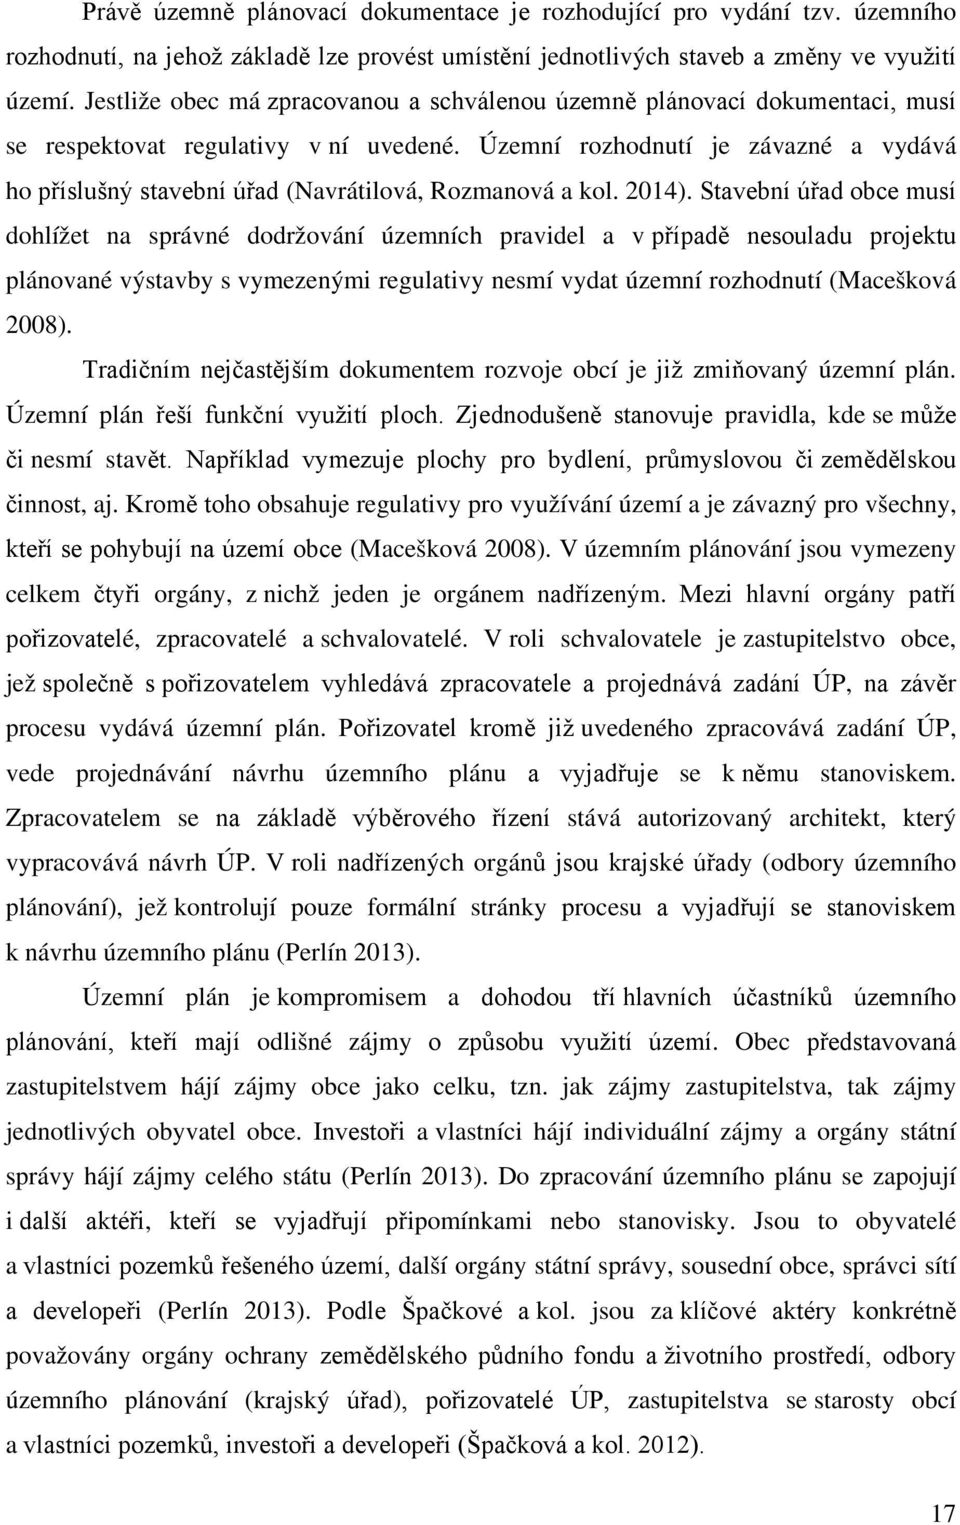 Územní rozhodnutí je závazné a vydává ho příslušný stavební úřad (Navrátilová, Rozmanová a kol. 2014).